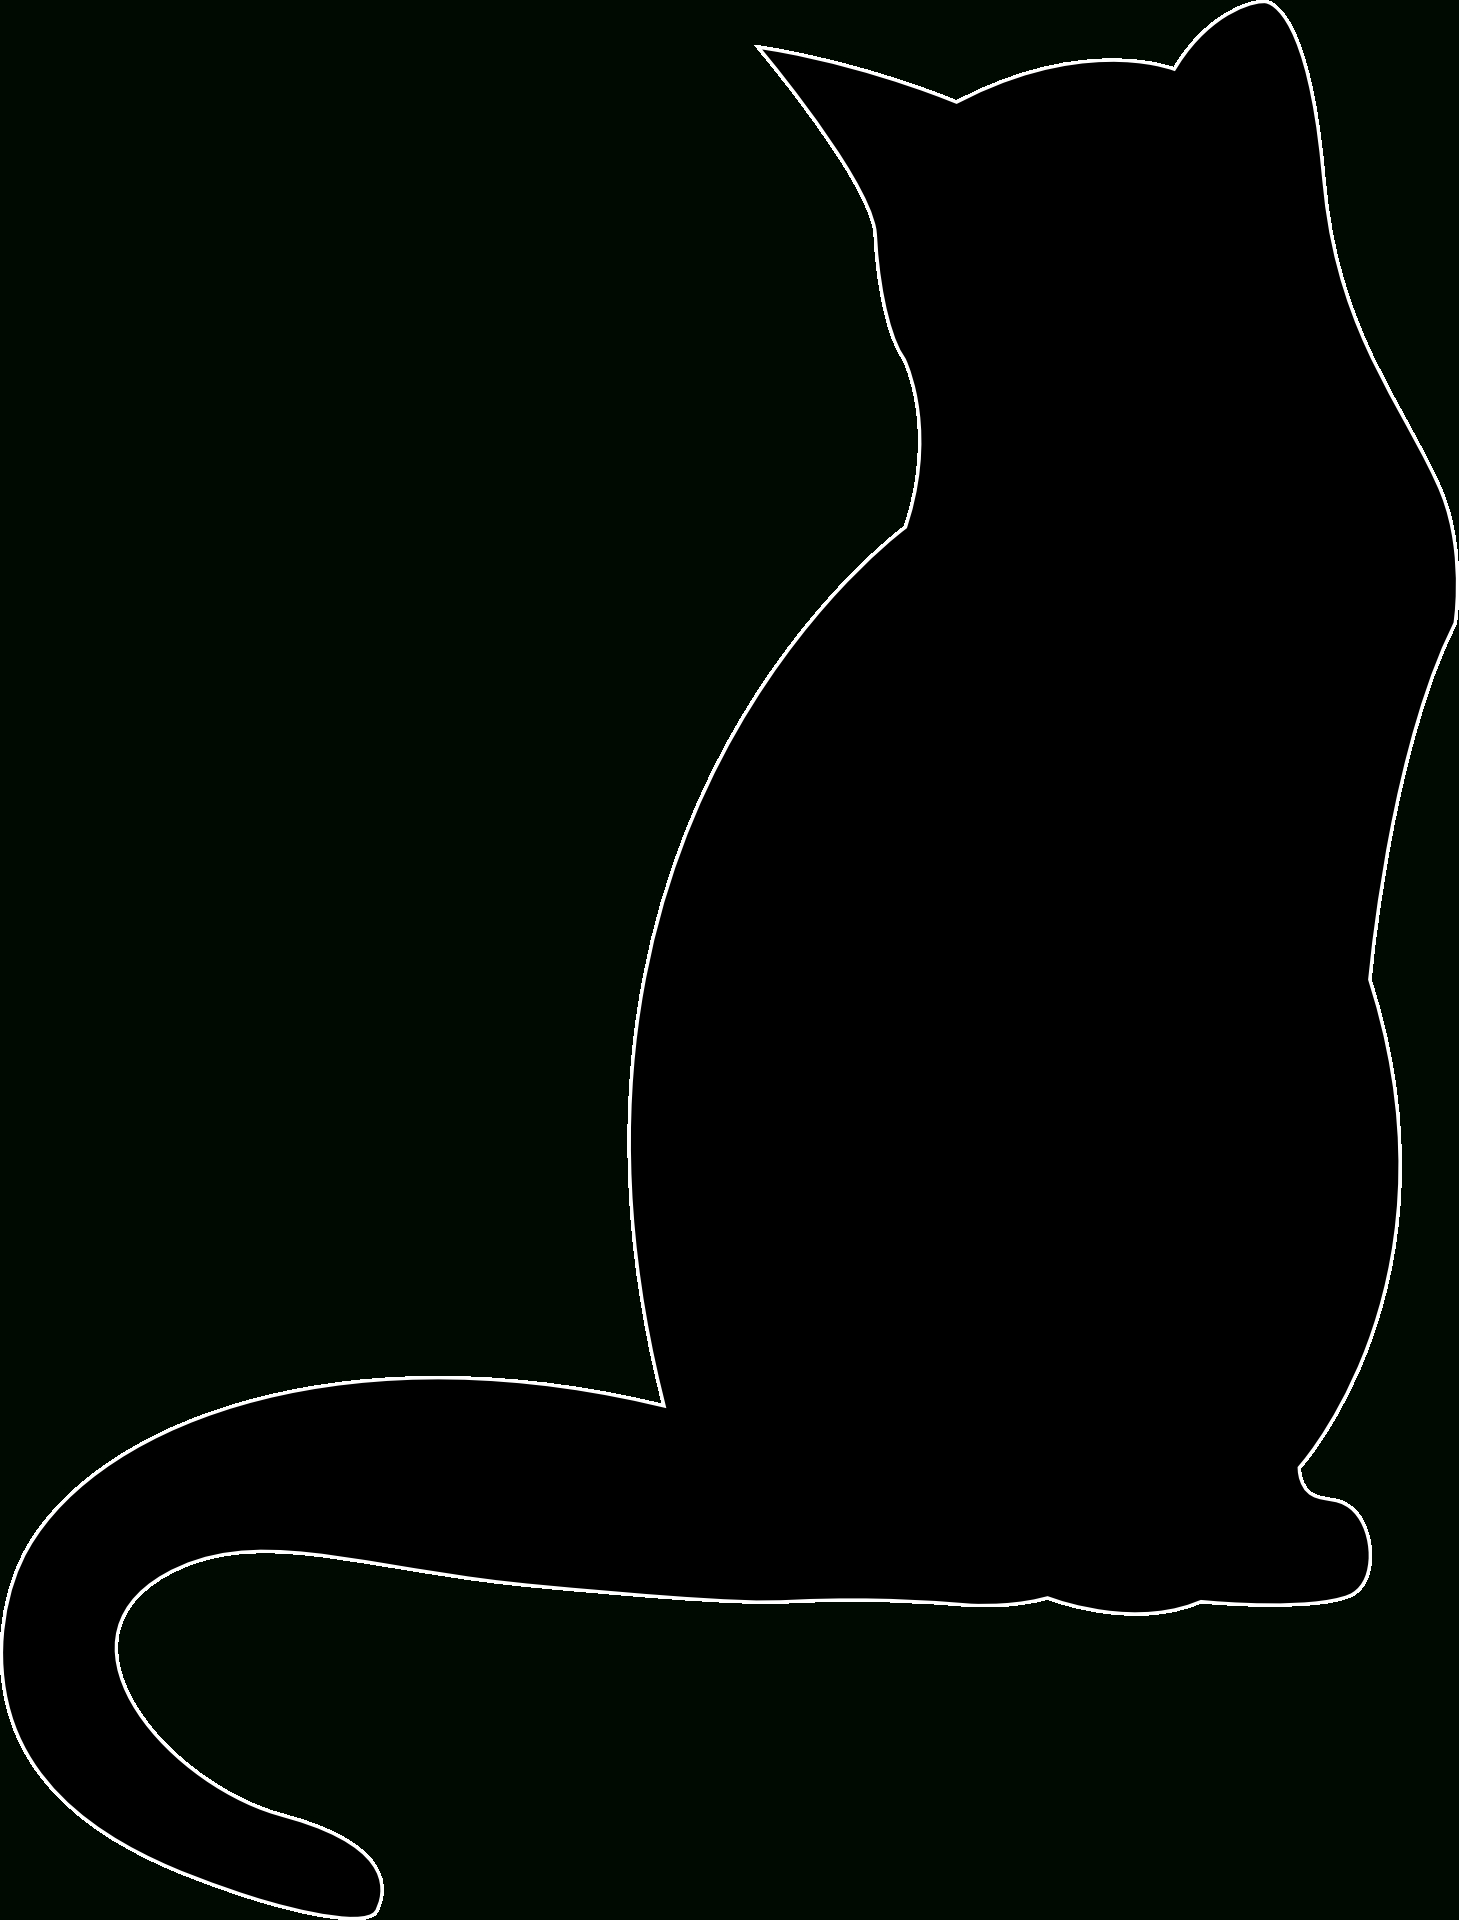 Pindzieciaki W Domu On Kot - Grafiki I Szablony / Cat Silhouette - Free Printable Cat Silhouette